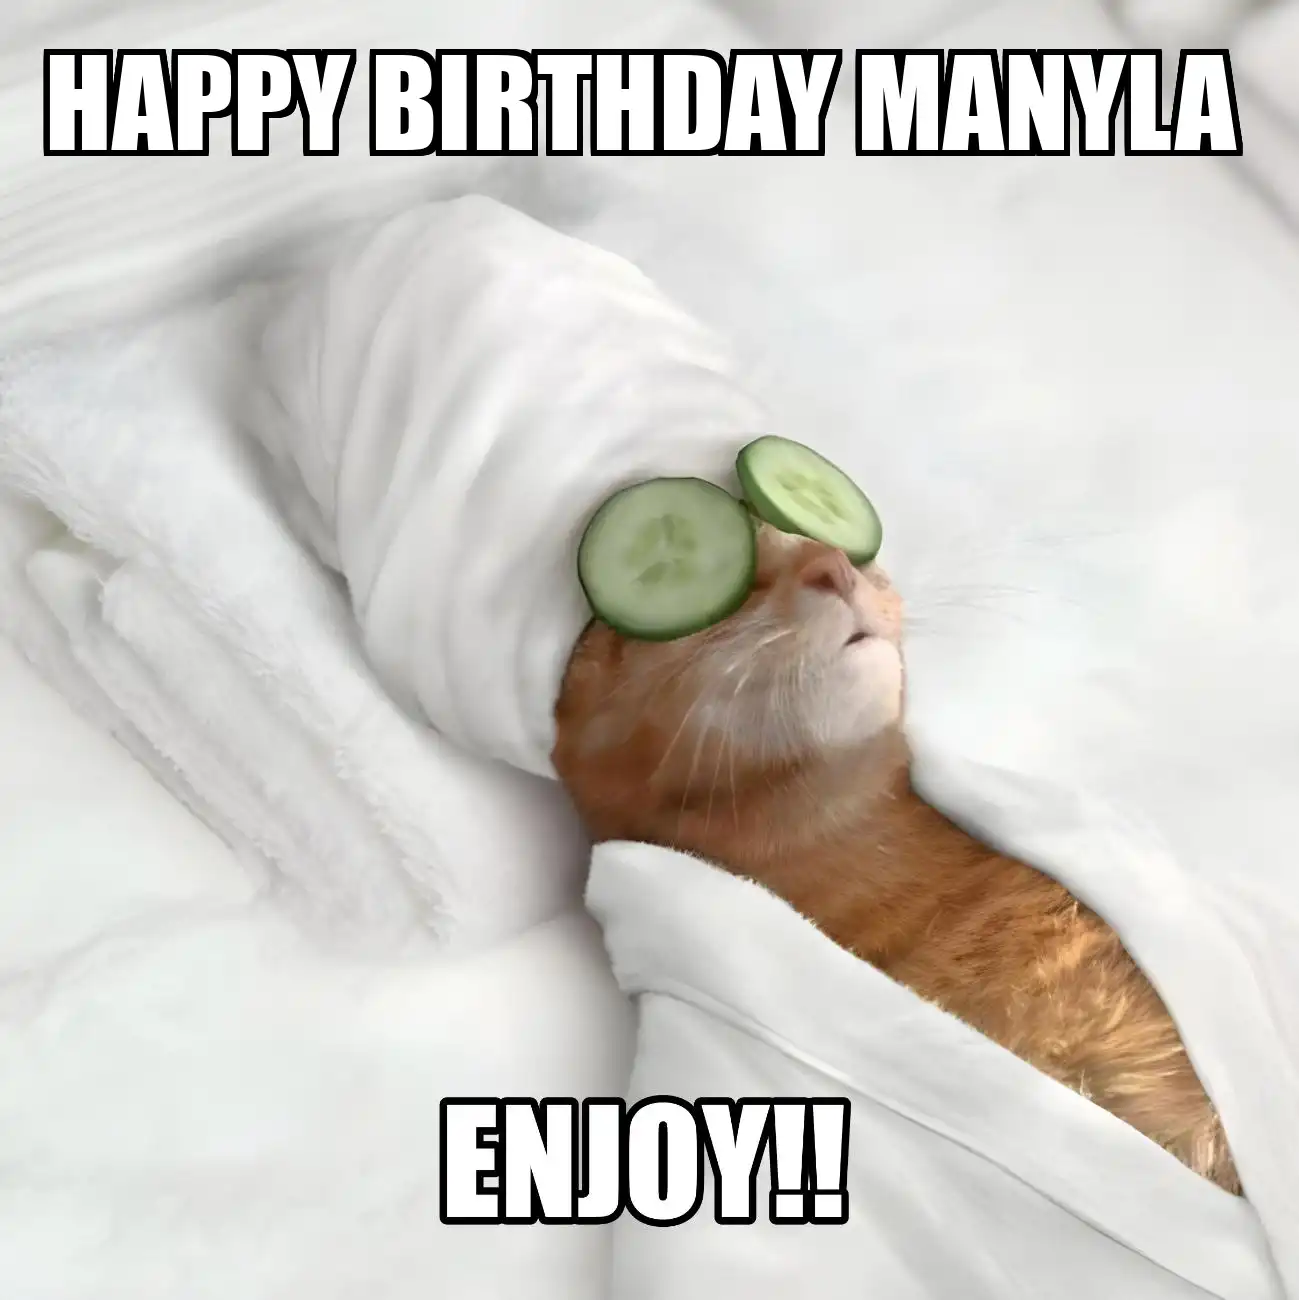 Happy Birthday Manyla Enjoy Cat Meme